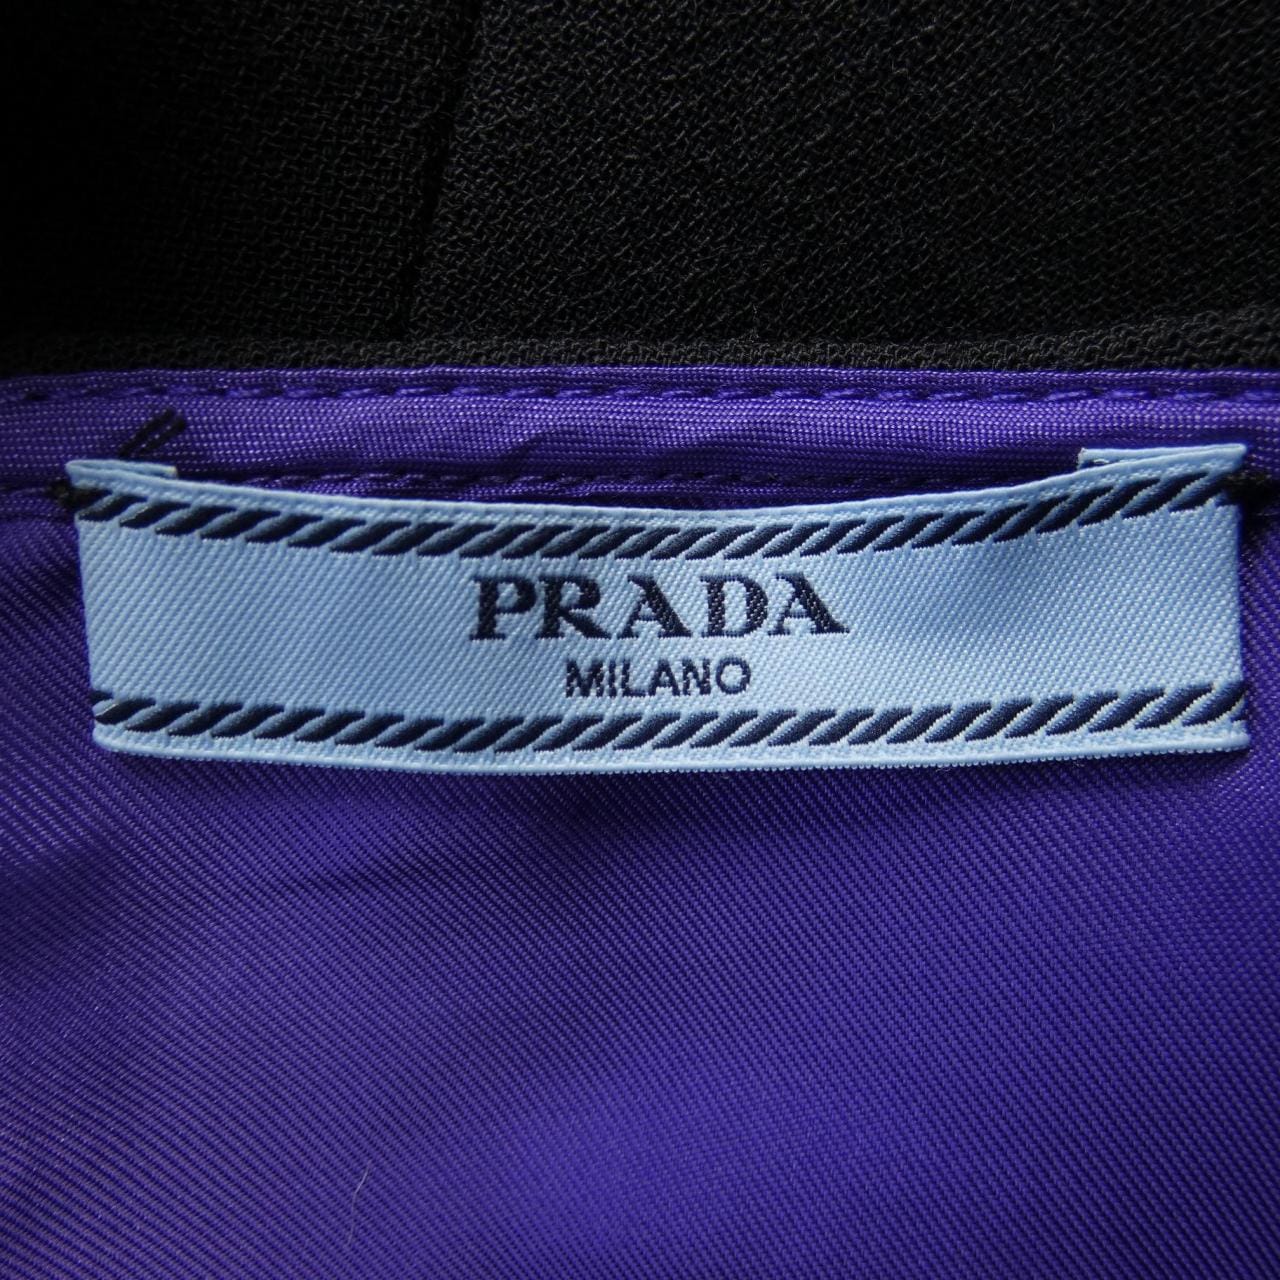 プラダ PRADA スカート